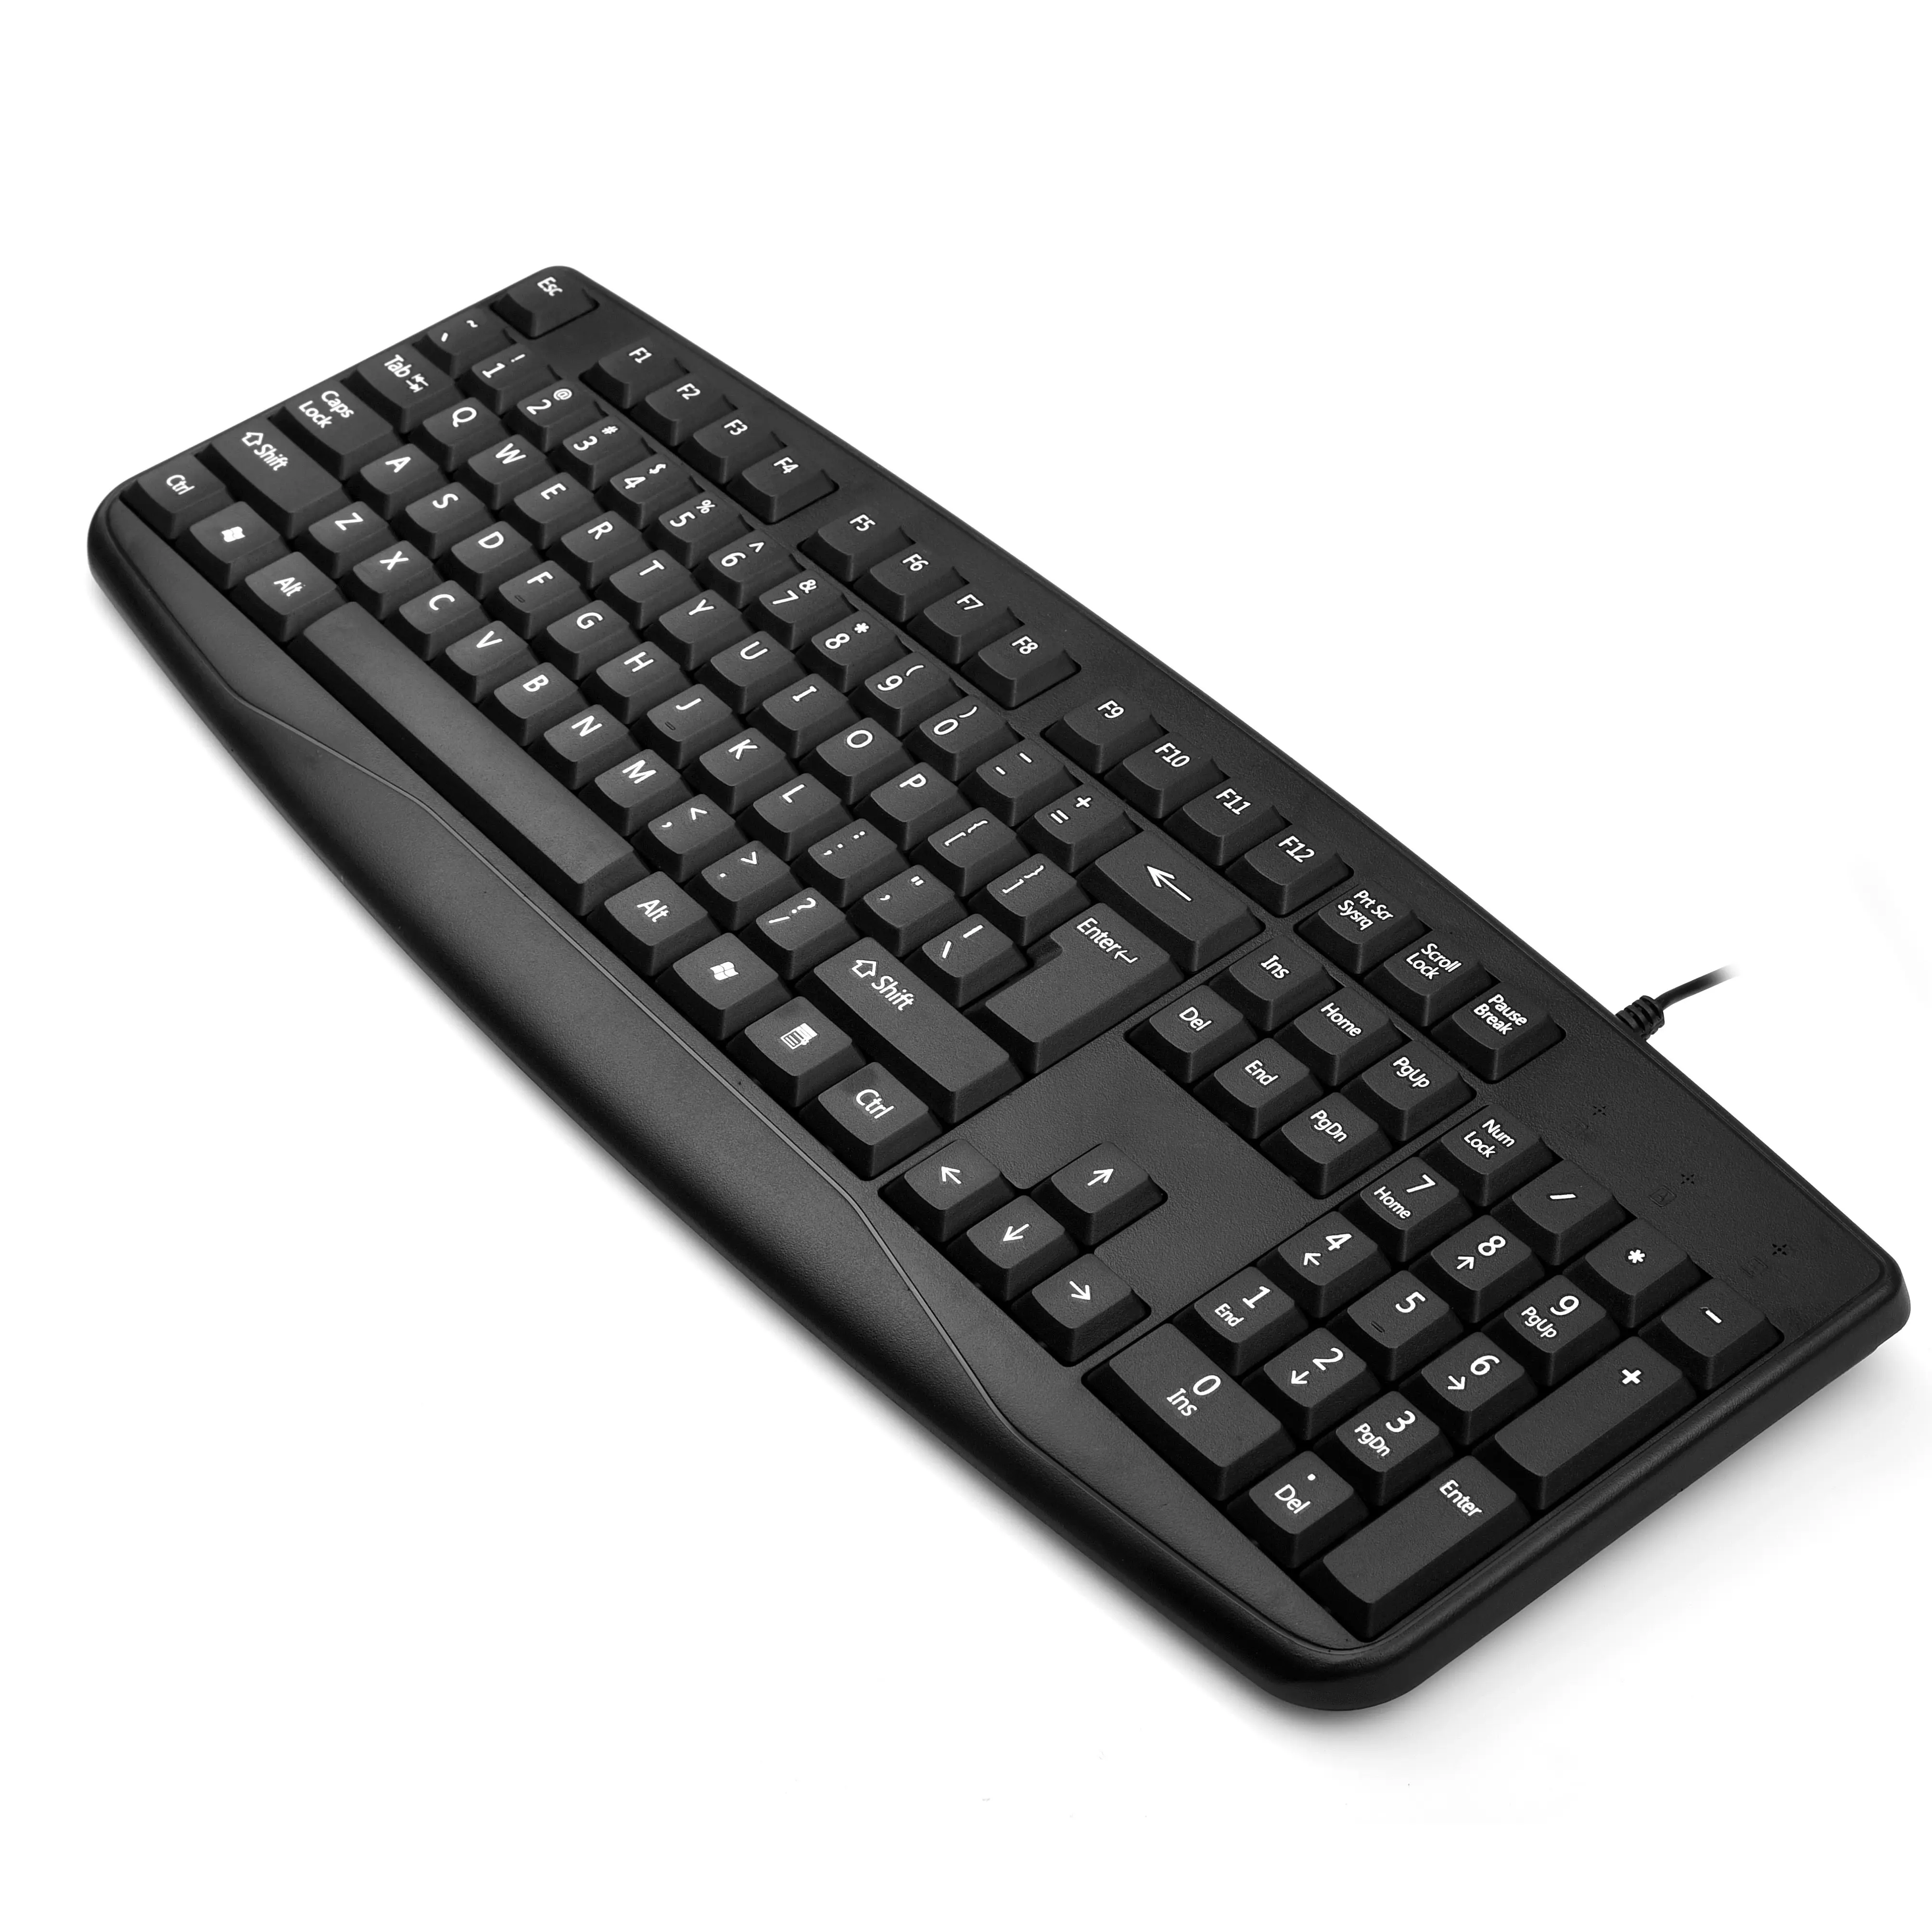 Computador mecânico melhor preço teclado com fio usb padrão inglês + layout árabe